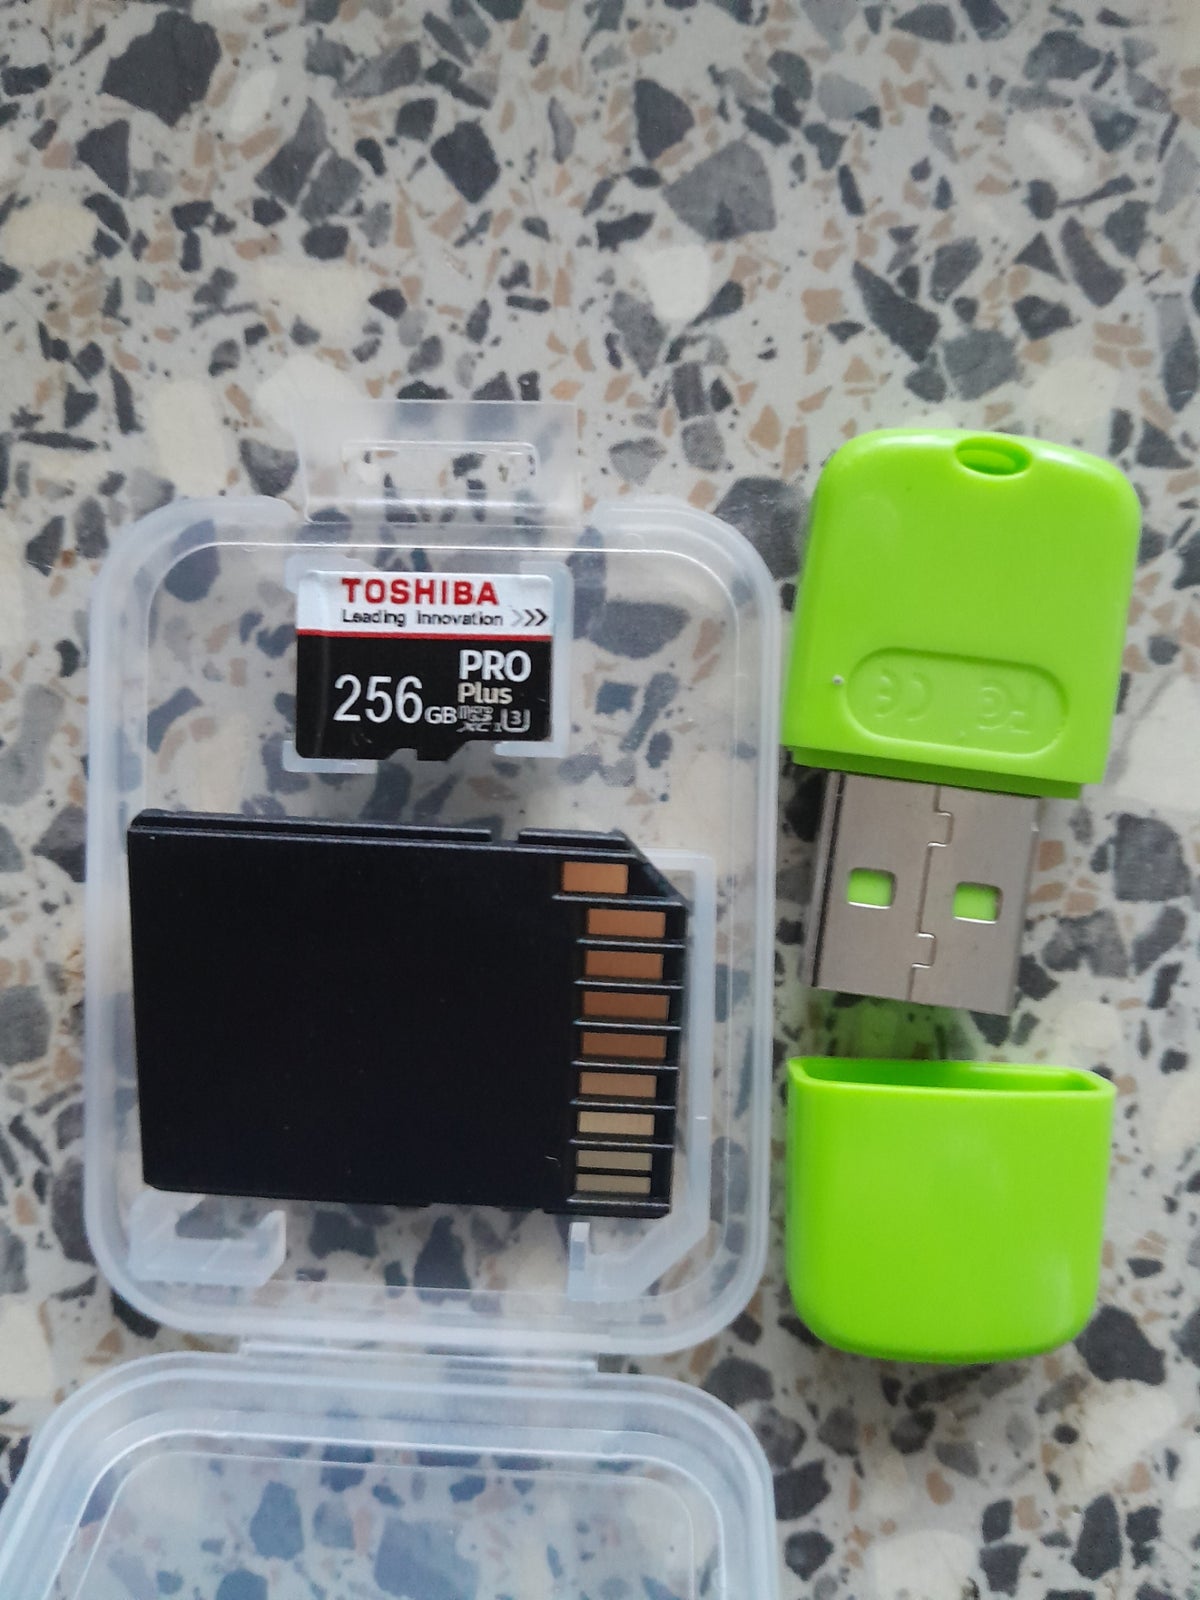 Mirco sd kort Kan bruges til mobilen, 1 TB OG 1 stk 128 GB